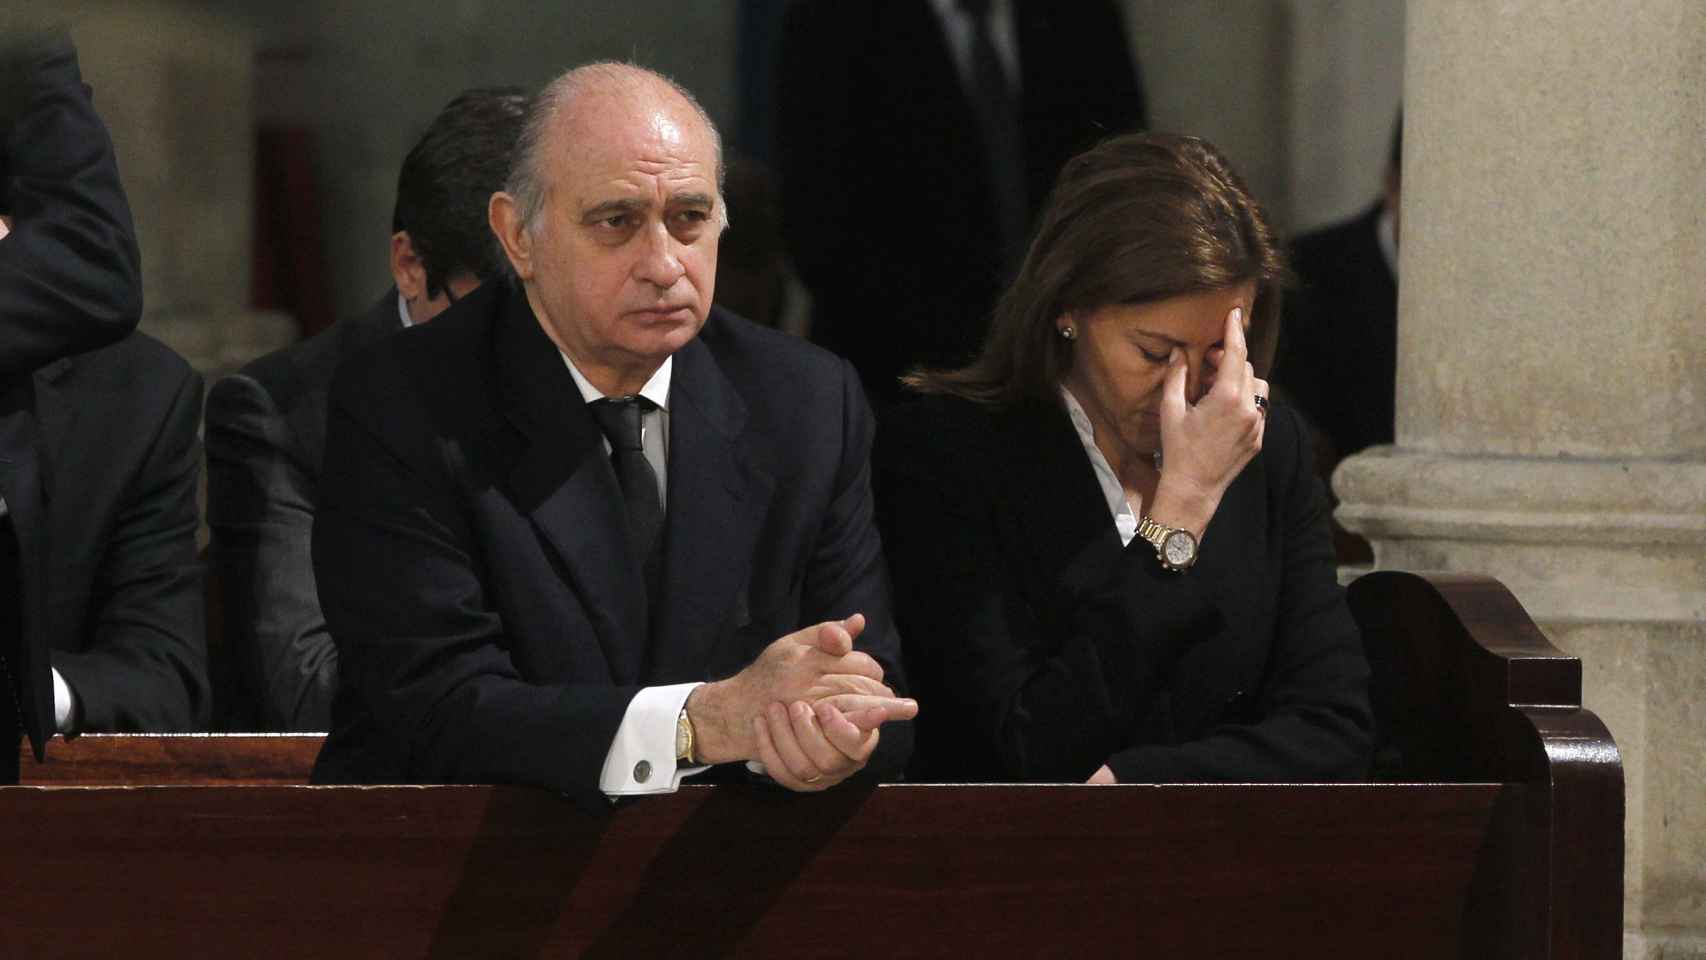 Jorge Fernández Díaz y María Dolores de Cospedal durante la misa funeral con motivo del décimo aniversario de los atentados terroristas del 11M. El exministro es una persona de fuertes convicciones religiosas.